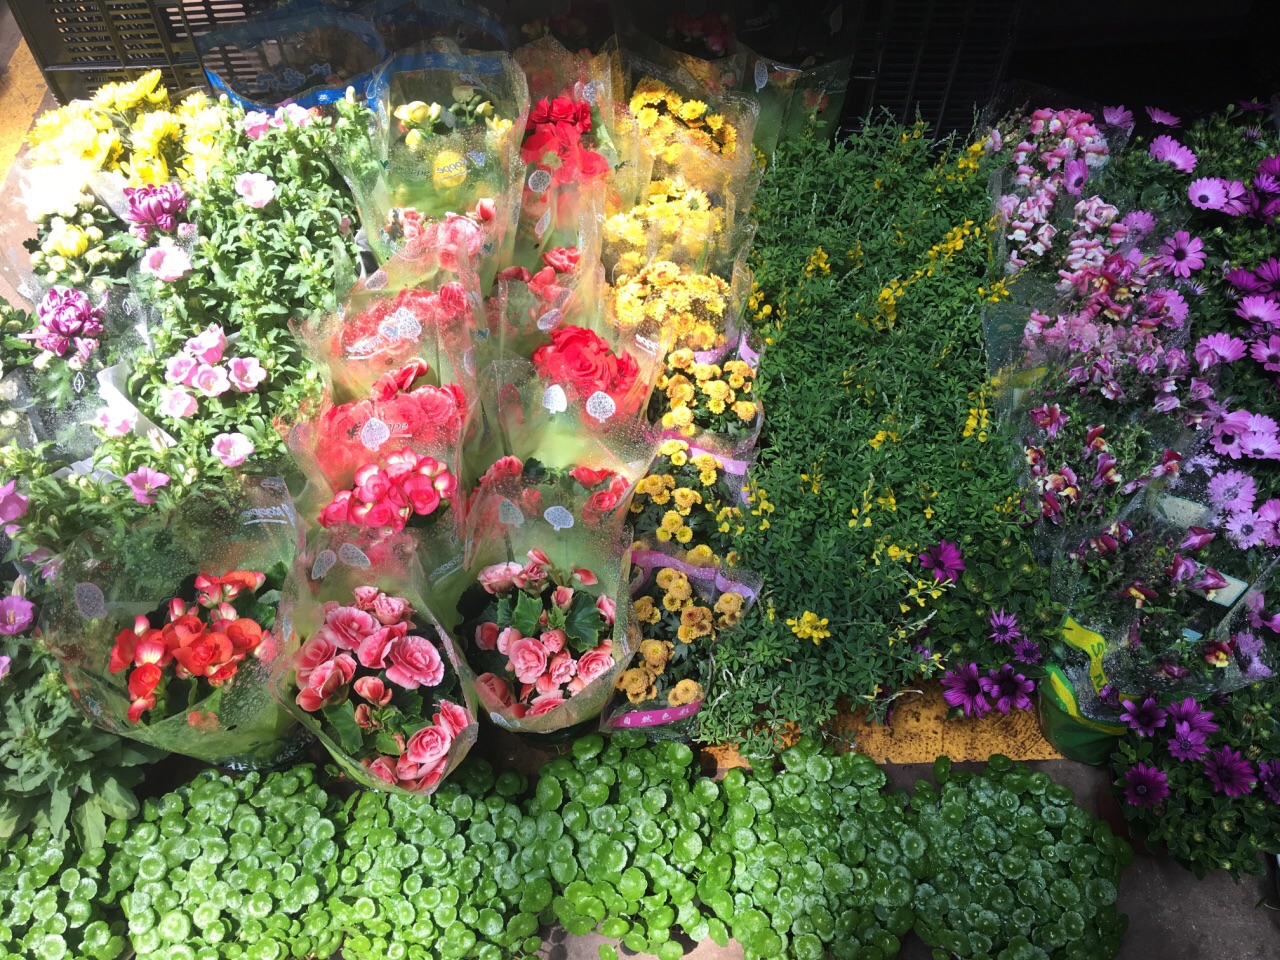 【携程攻略】昆明斗南花卉市场购物,肉肉和鲜花的王国